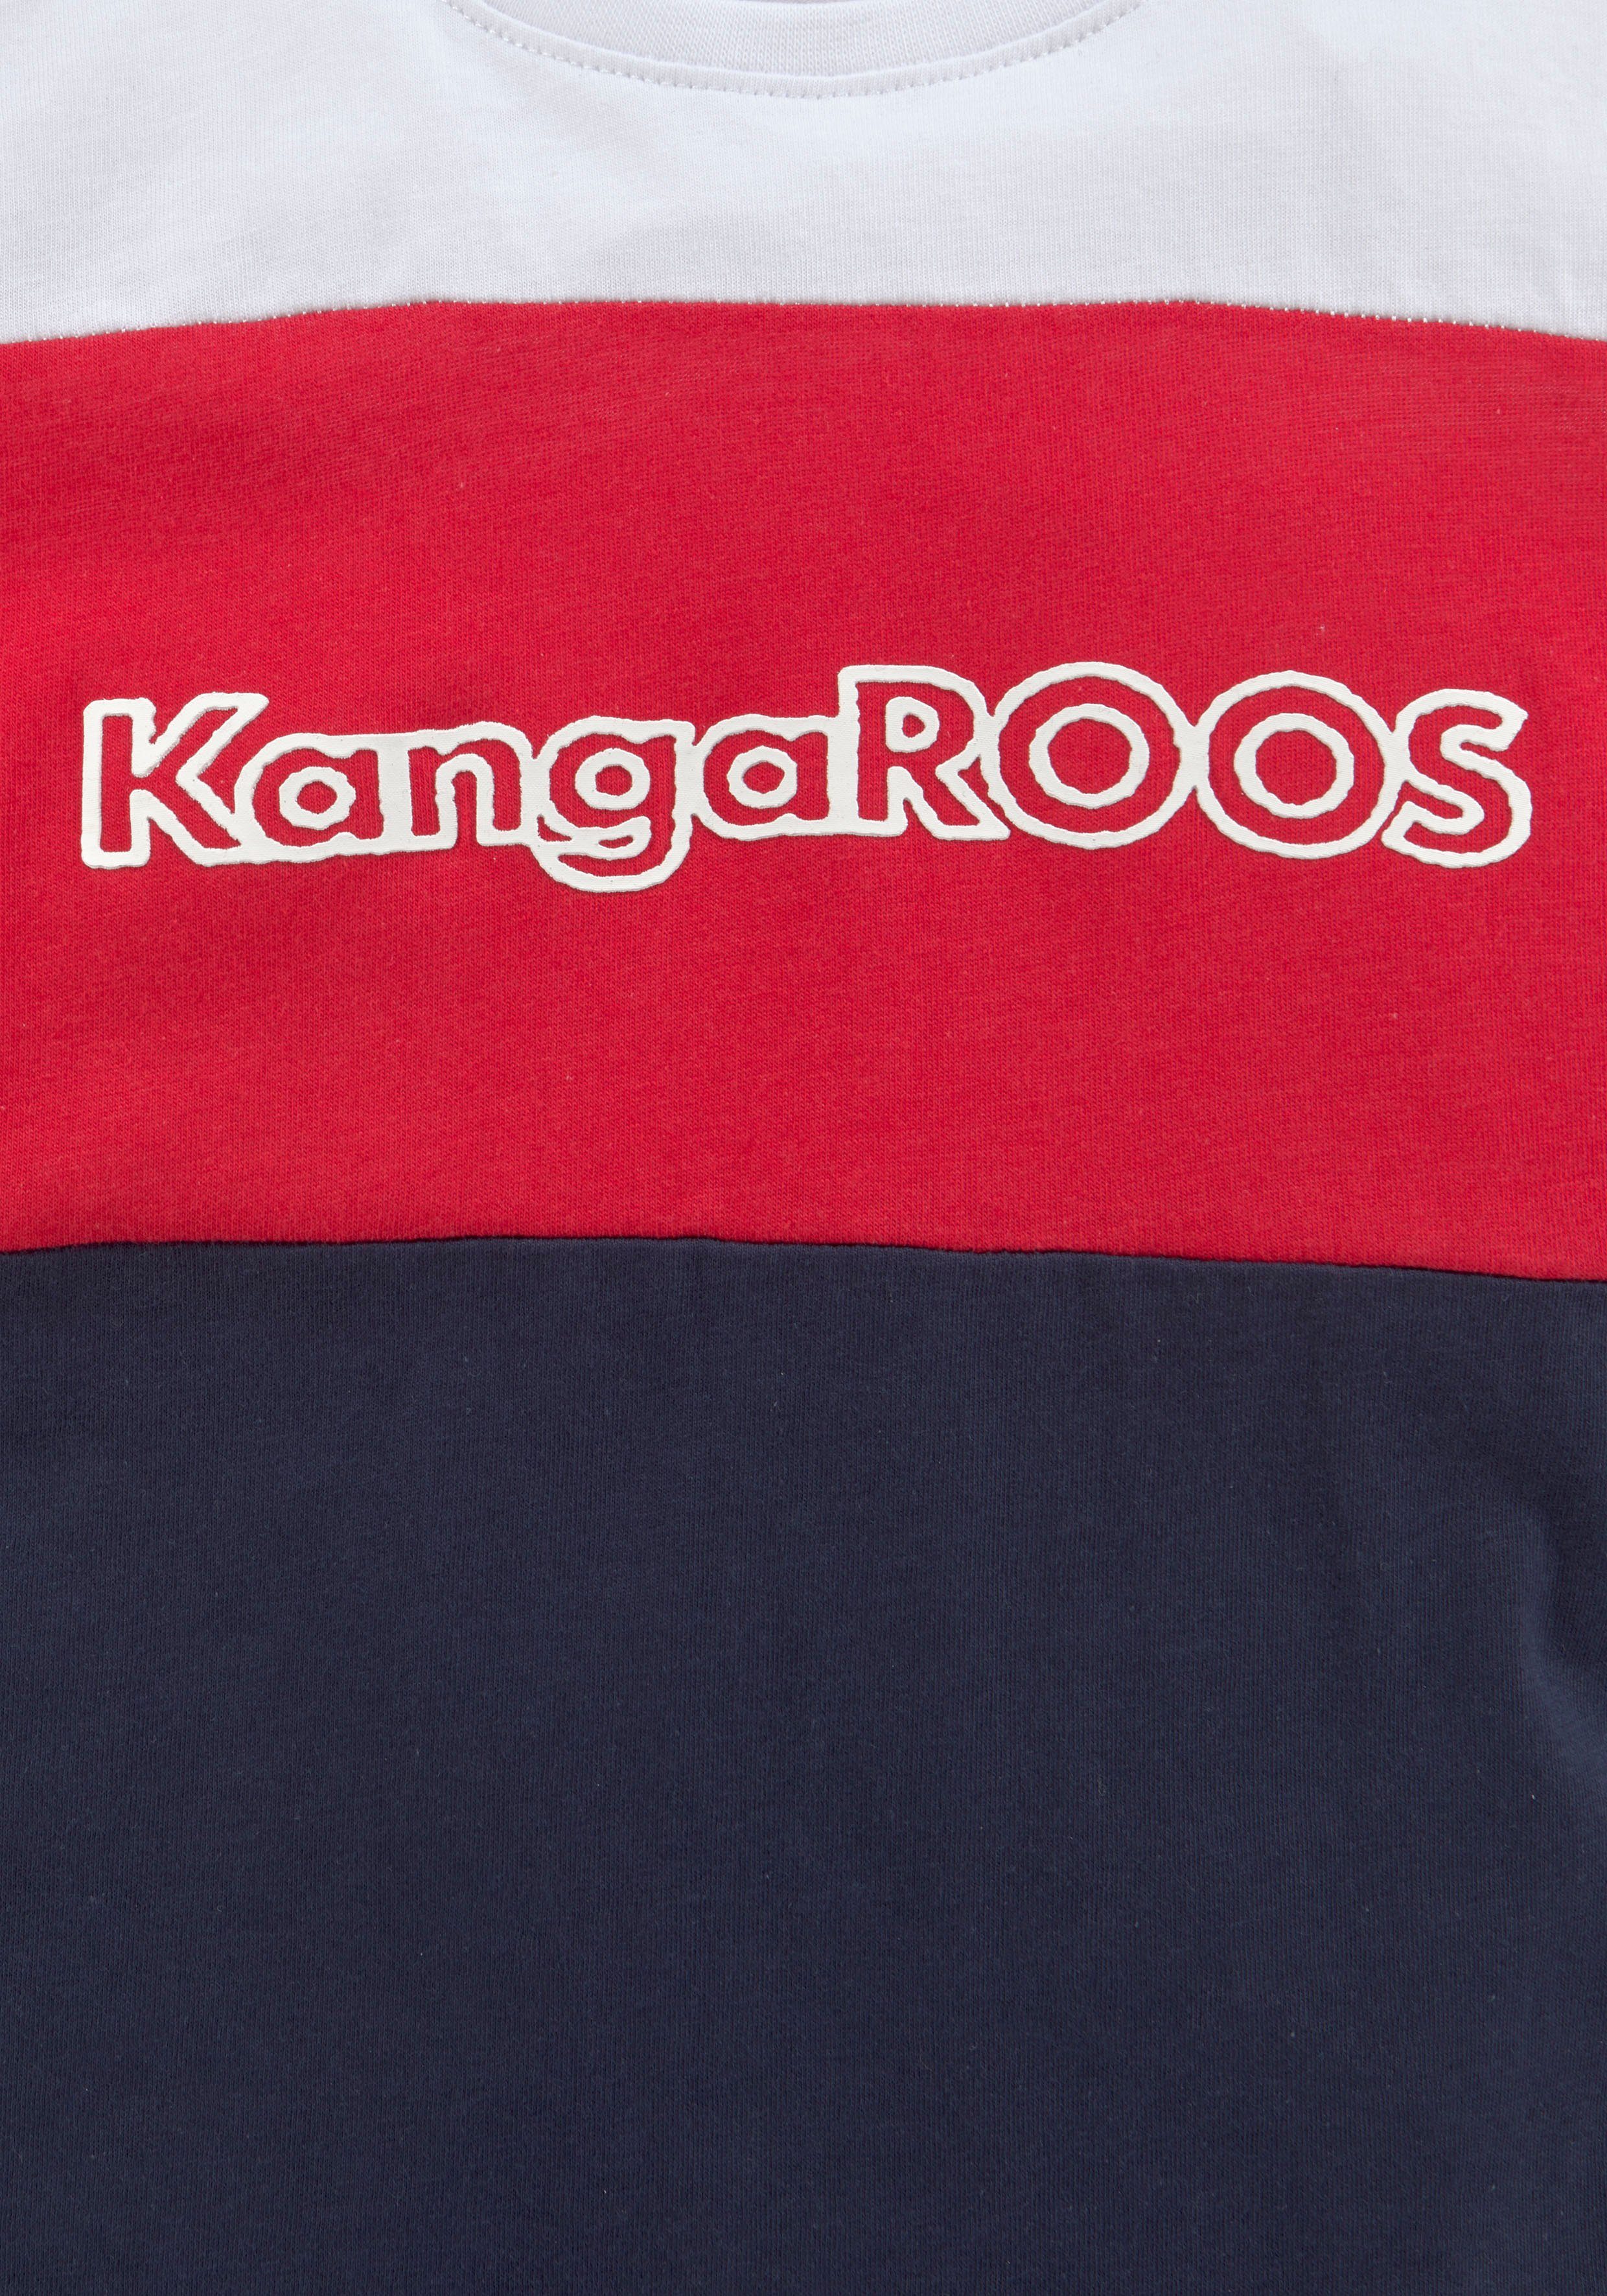 Colorblockdesign T-Shirt KangaROOS in